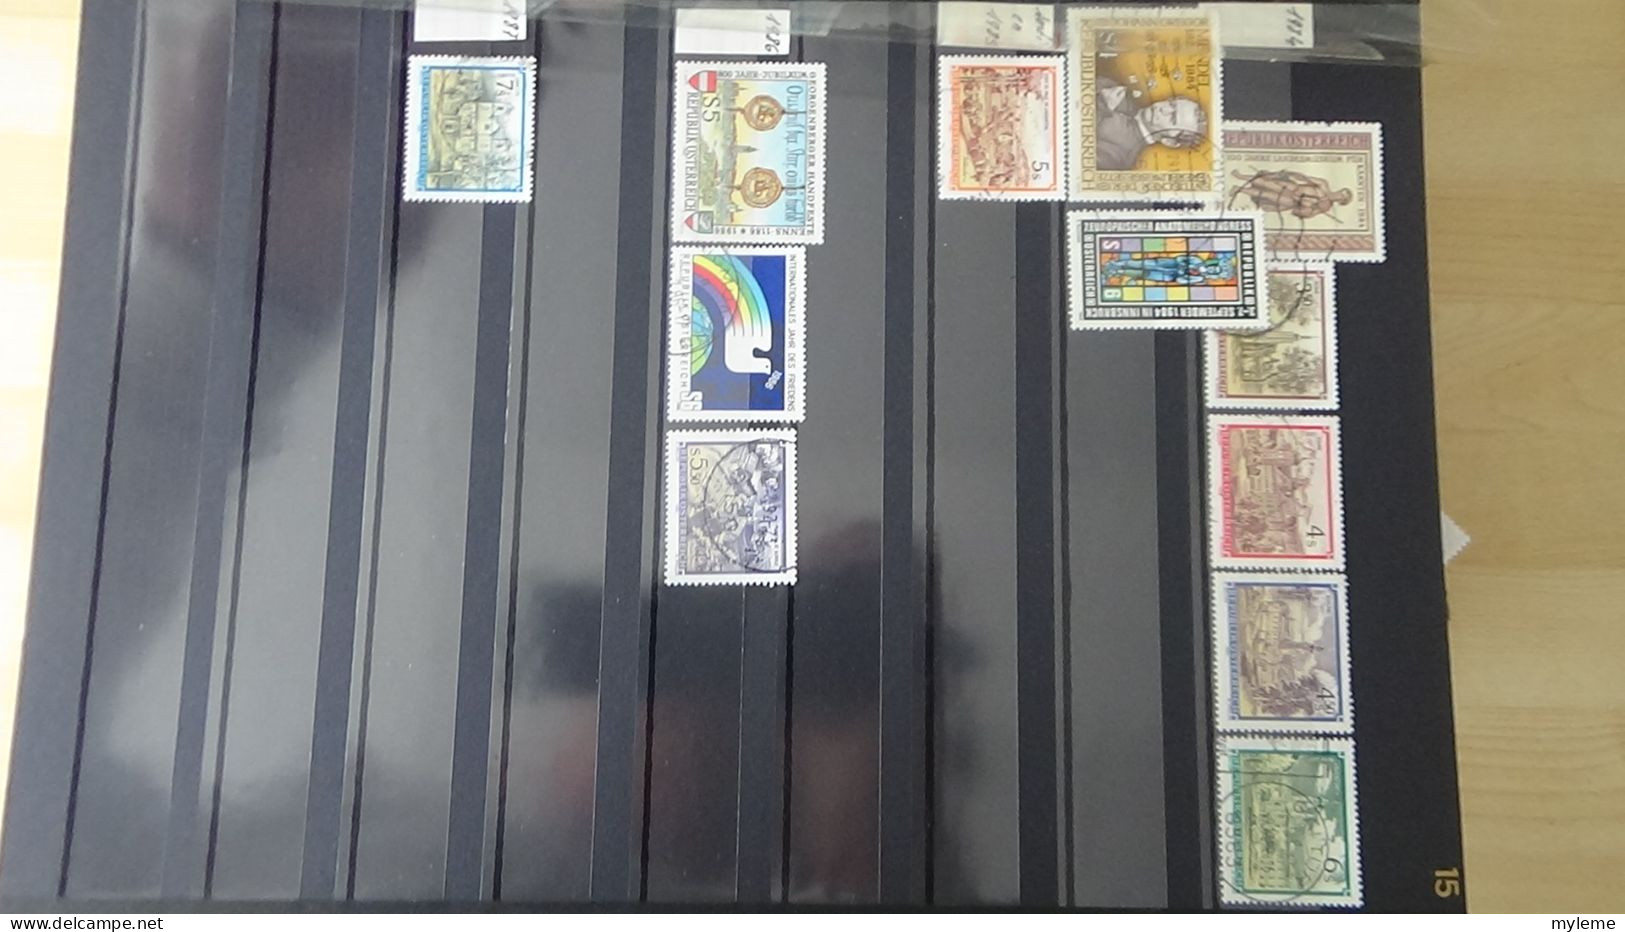 BF44 Bel ensemble de timbres de divers pays dont PA 15 * signé  voir scan. Cote 800 euros